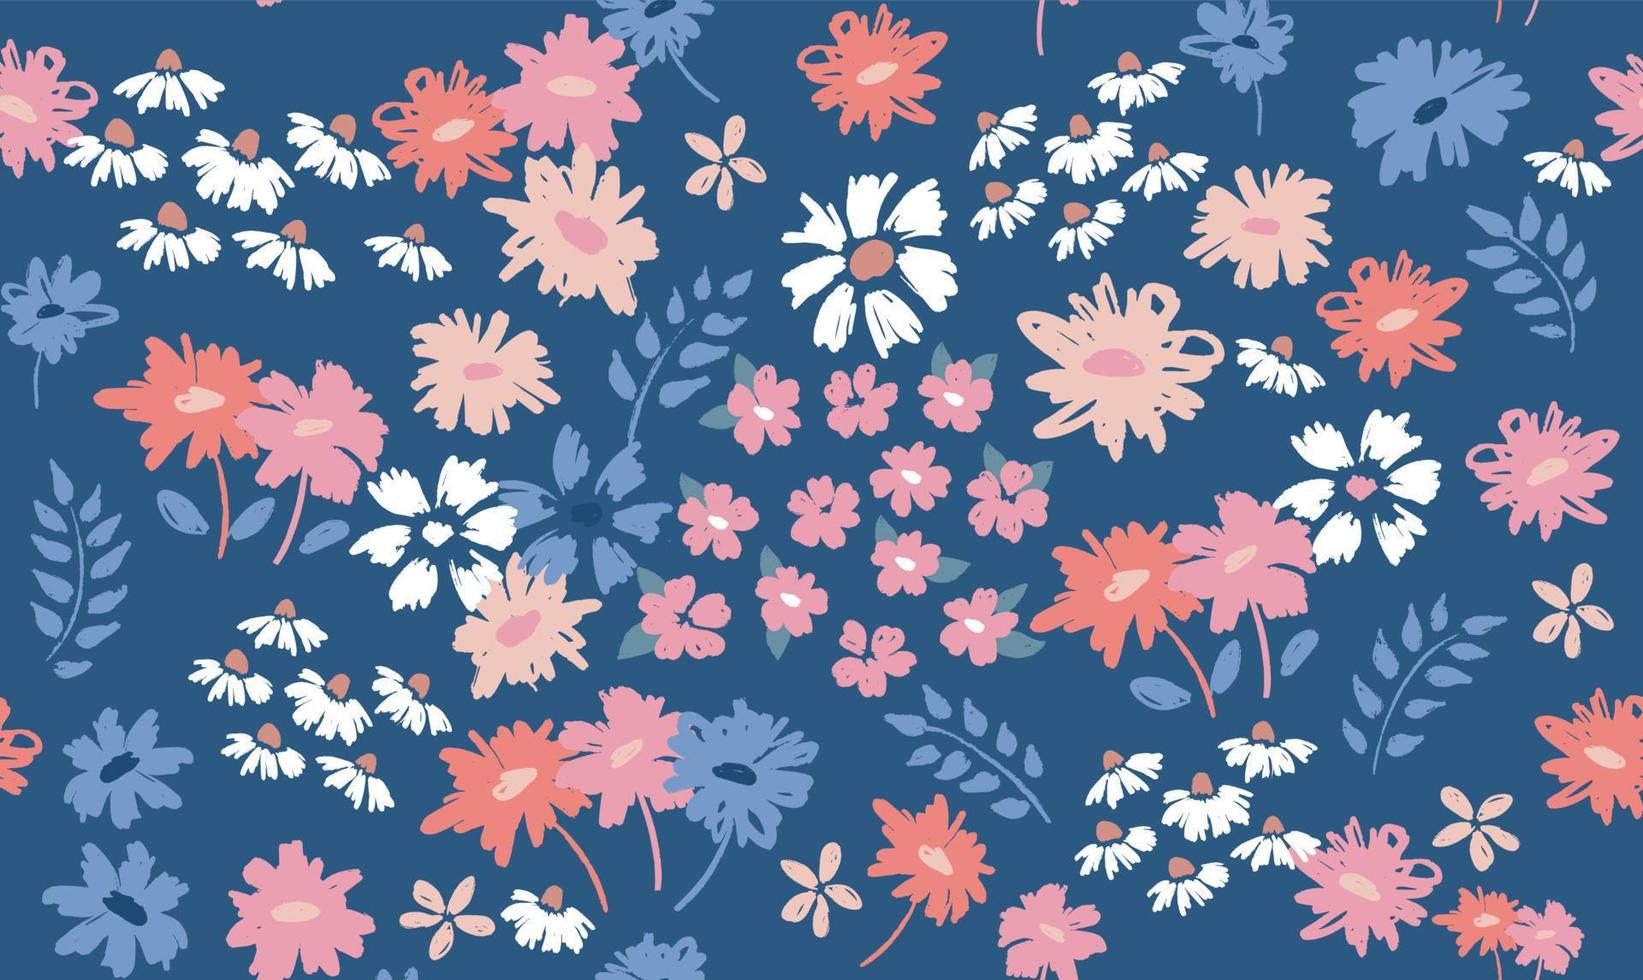 bloemenachtergrond voor textiel, badpak, behang, patroonomslagen, oppervlak, cadeaupapier. vector